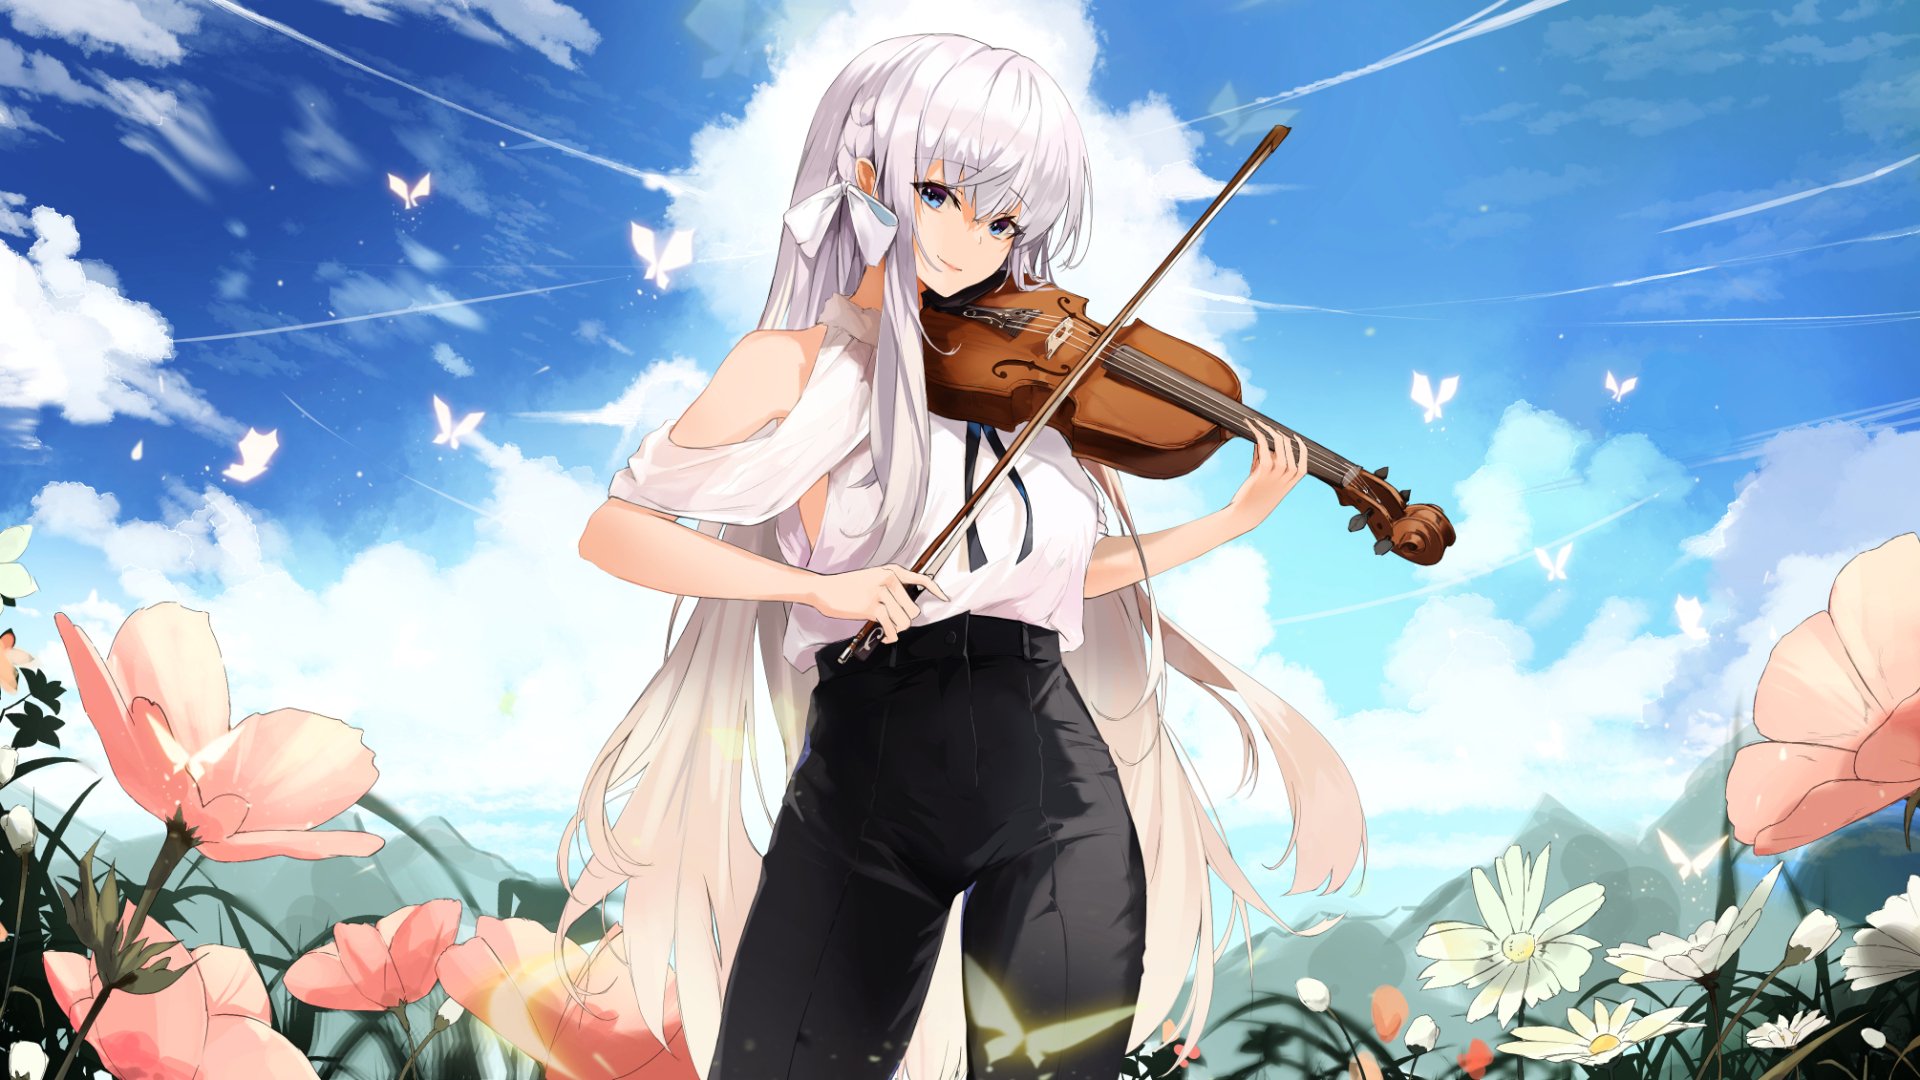 She looks like a jazz player | Anime, Kawaii anime, Anime art beautiful